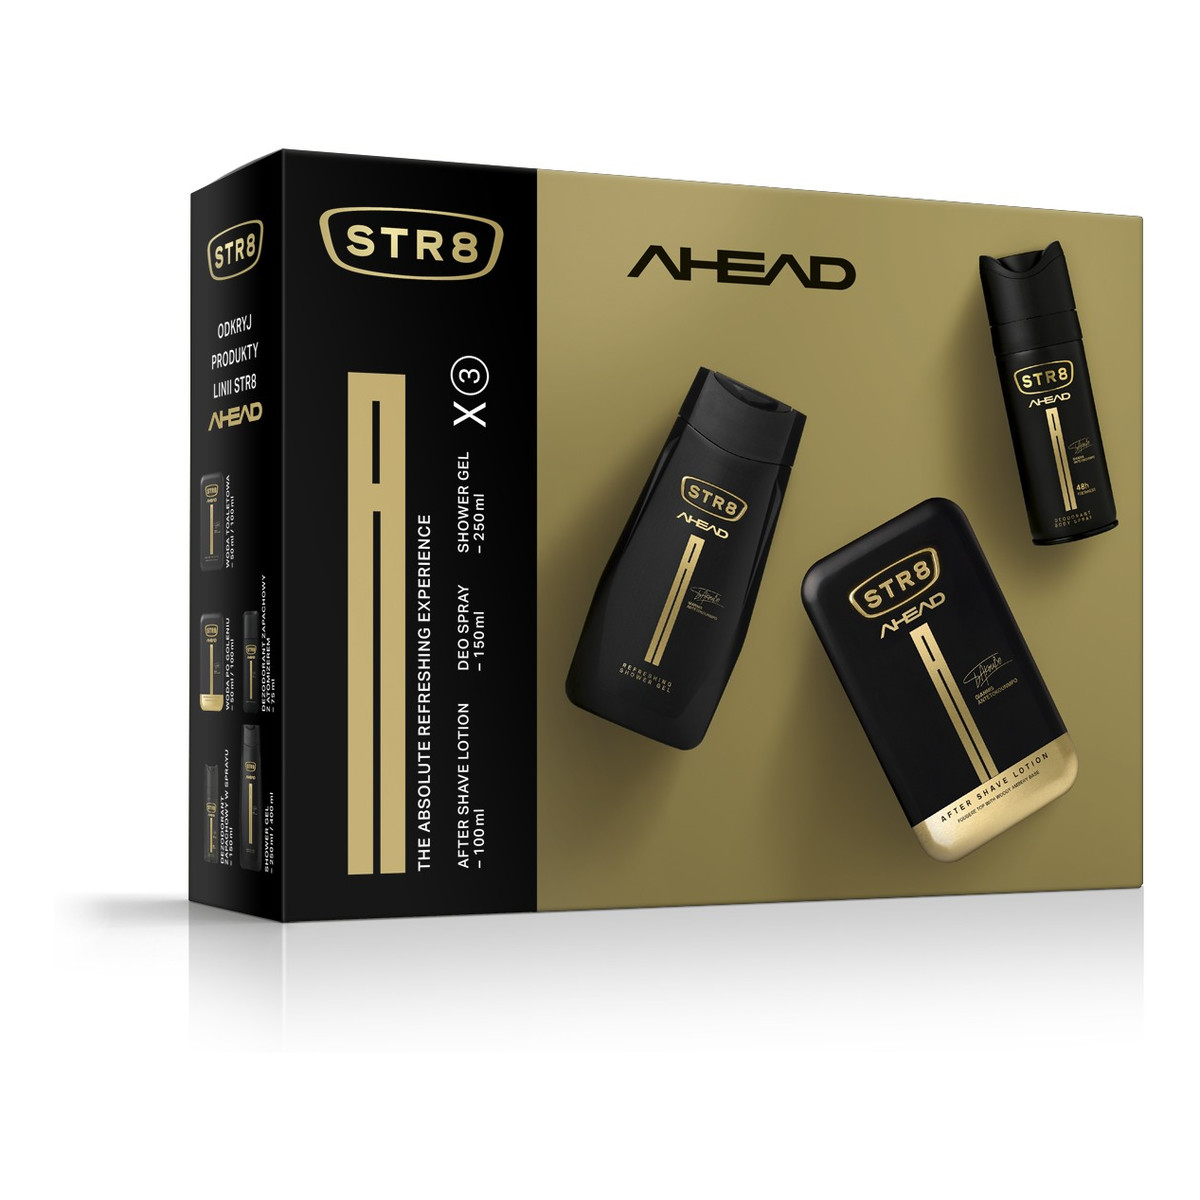 STR8 Ahead Zestaw prezentowy (dezodorant spray 150ml+płyn po goleniu 100ml+żel pod prysznic)